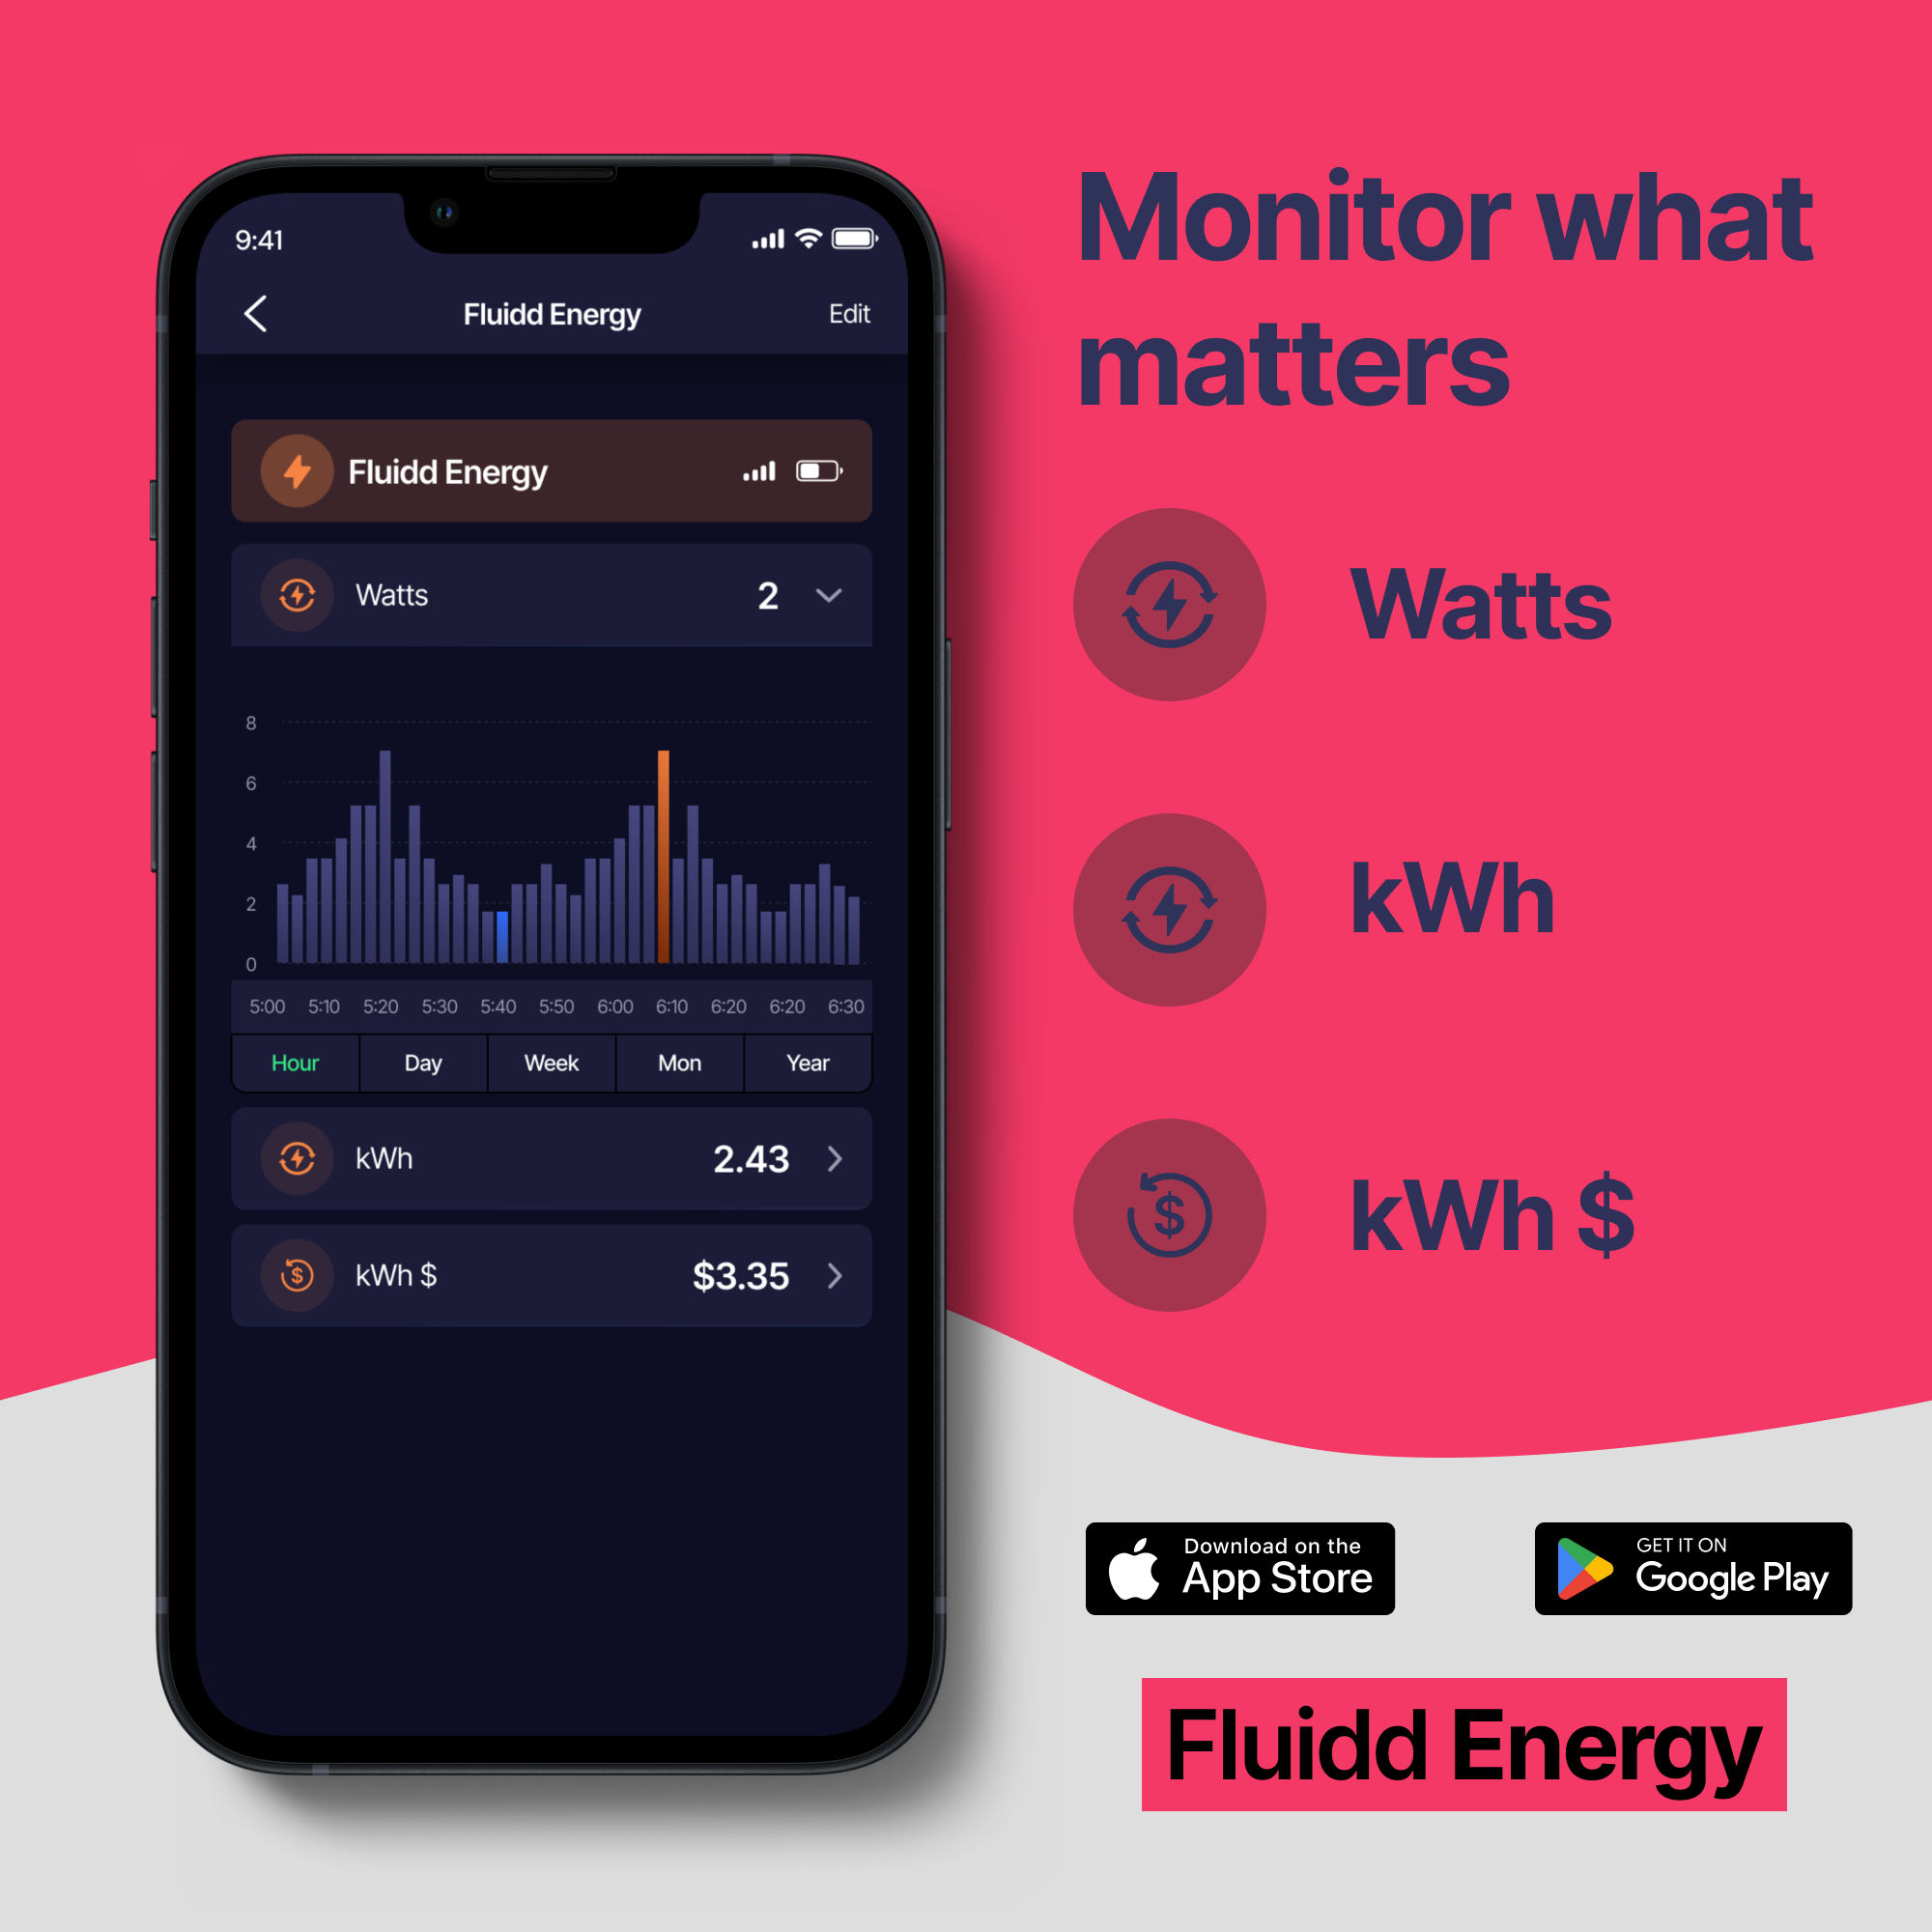 FluiddEnergy-MonitorWhatMattersv1.0_e8de65c3-ecf4-4f10-9bfe-921077da8372